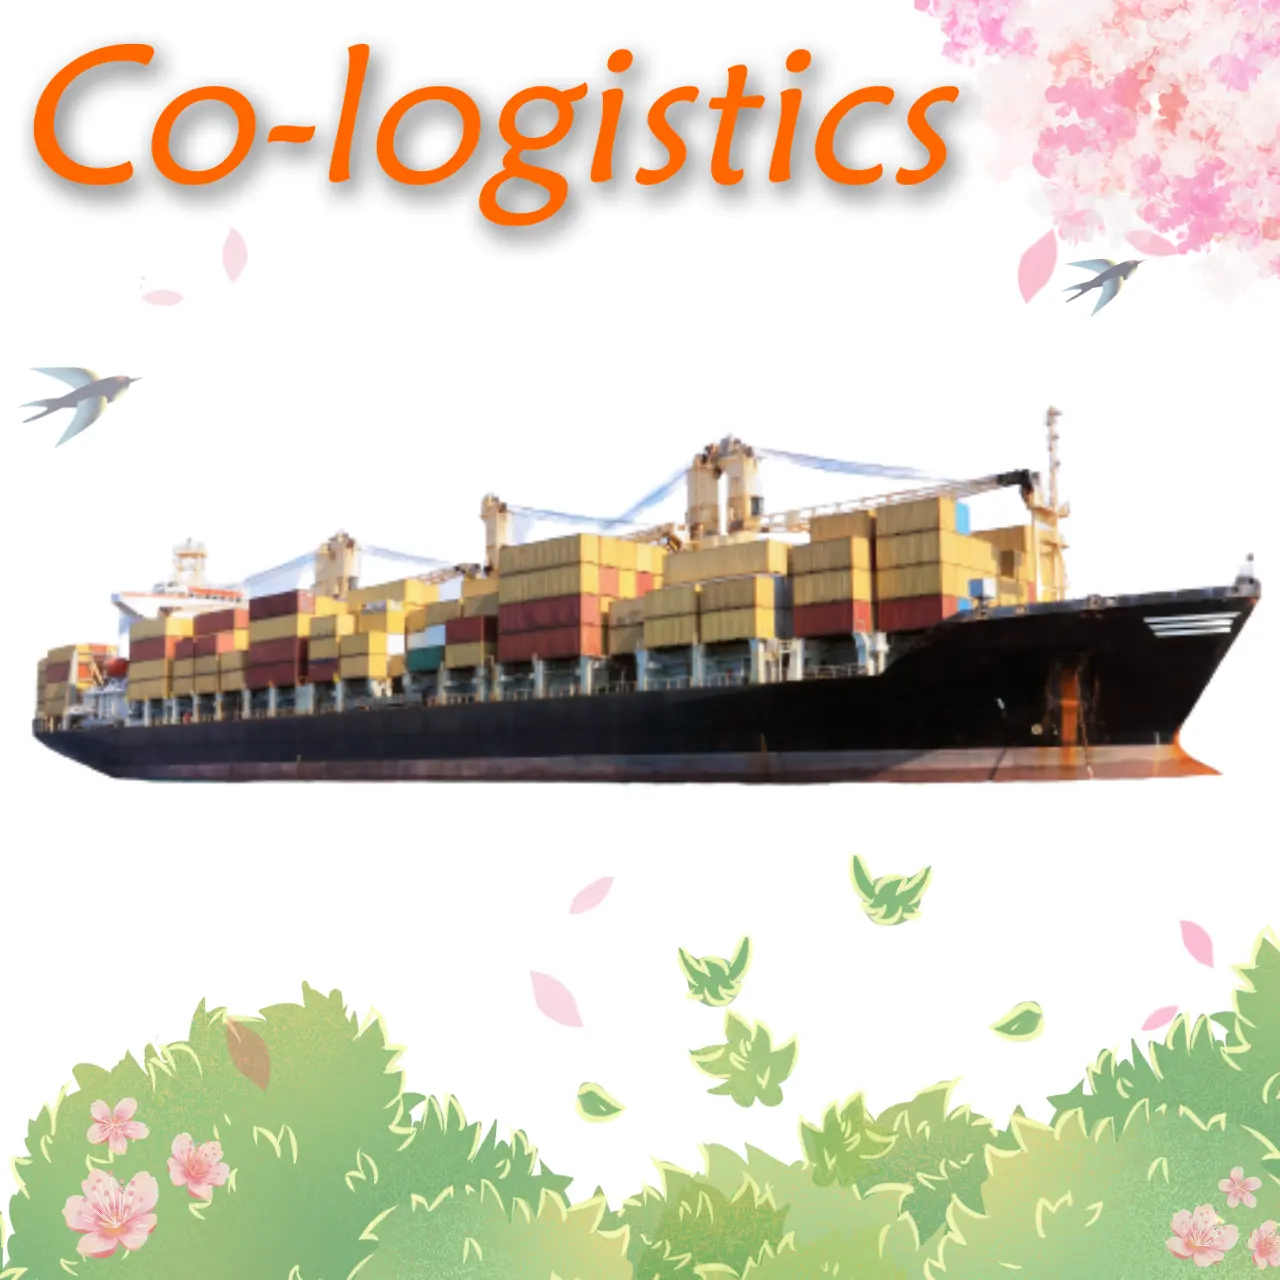 Contenedor FCL y LCL, envío desde los puertos de Shenehzn, Dong, Shanghai, Ningbó, a Canadá, EE. UU., envío marítimo barato